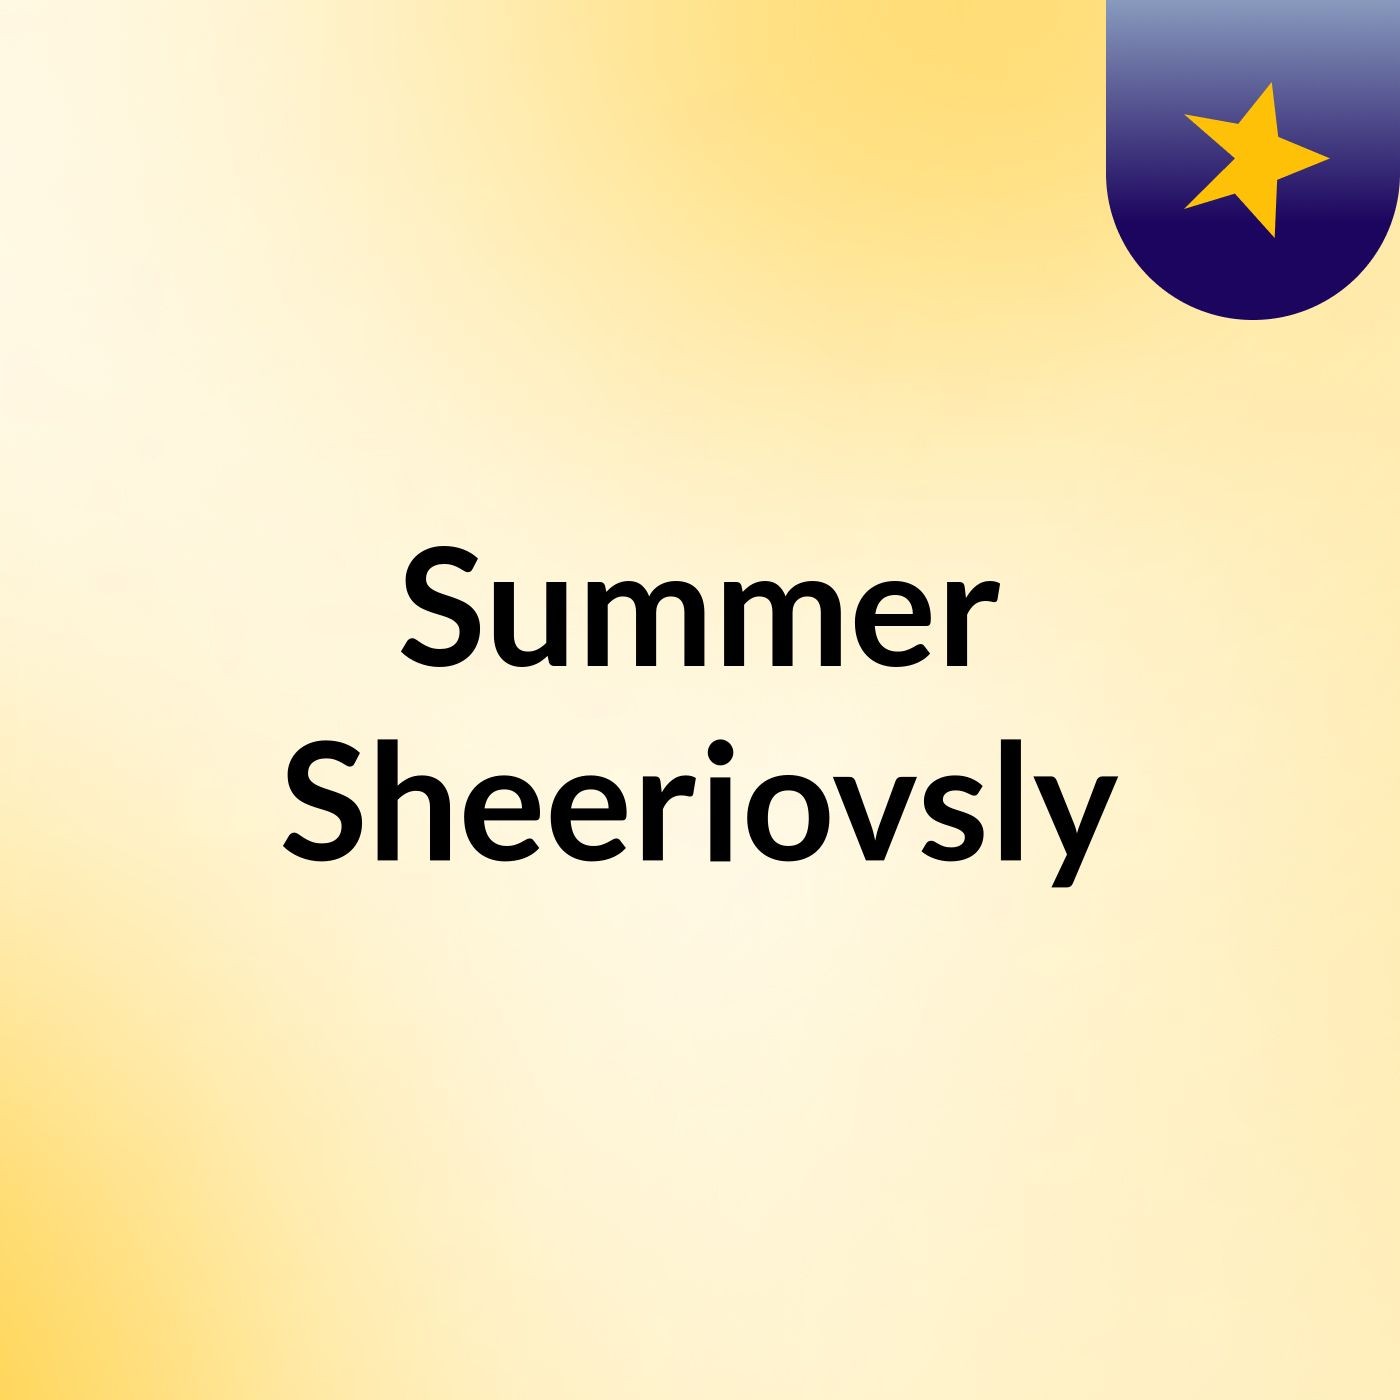 Summer Sheeriovsly